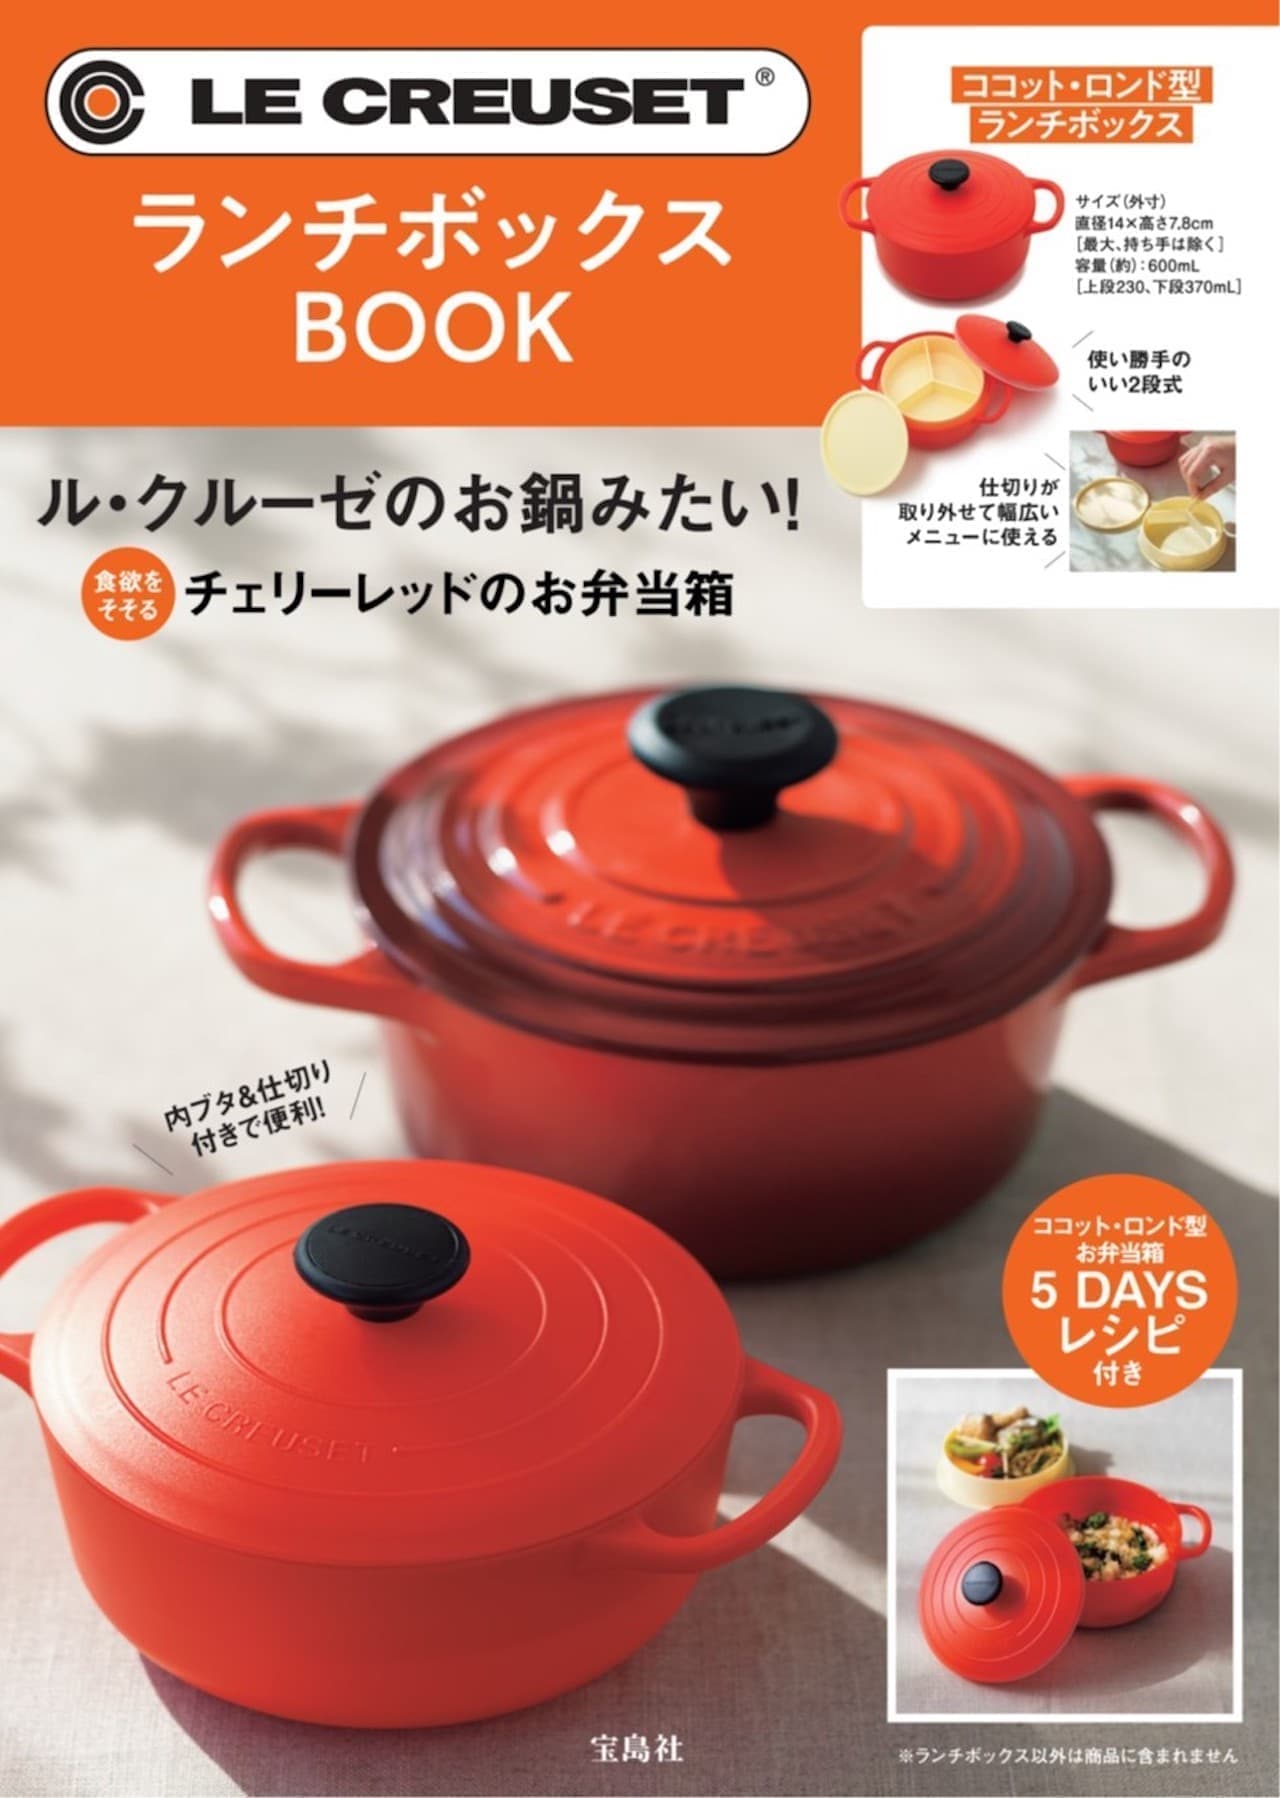 Takarajimasha “LE CREUSET Lunch Box BOOK”